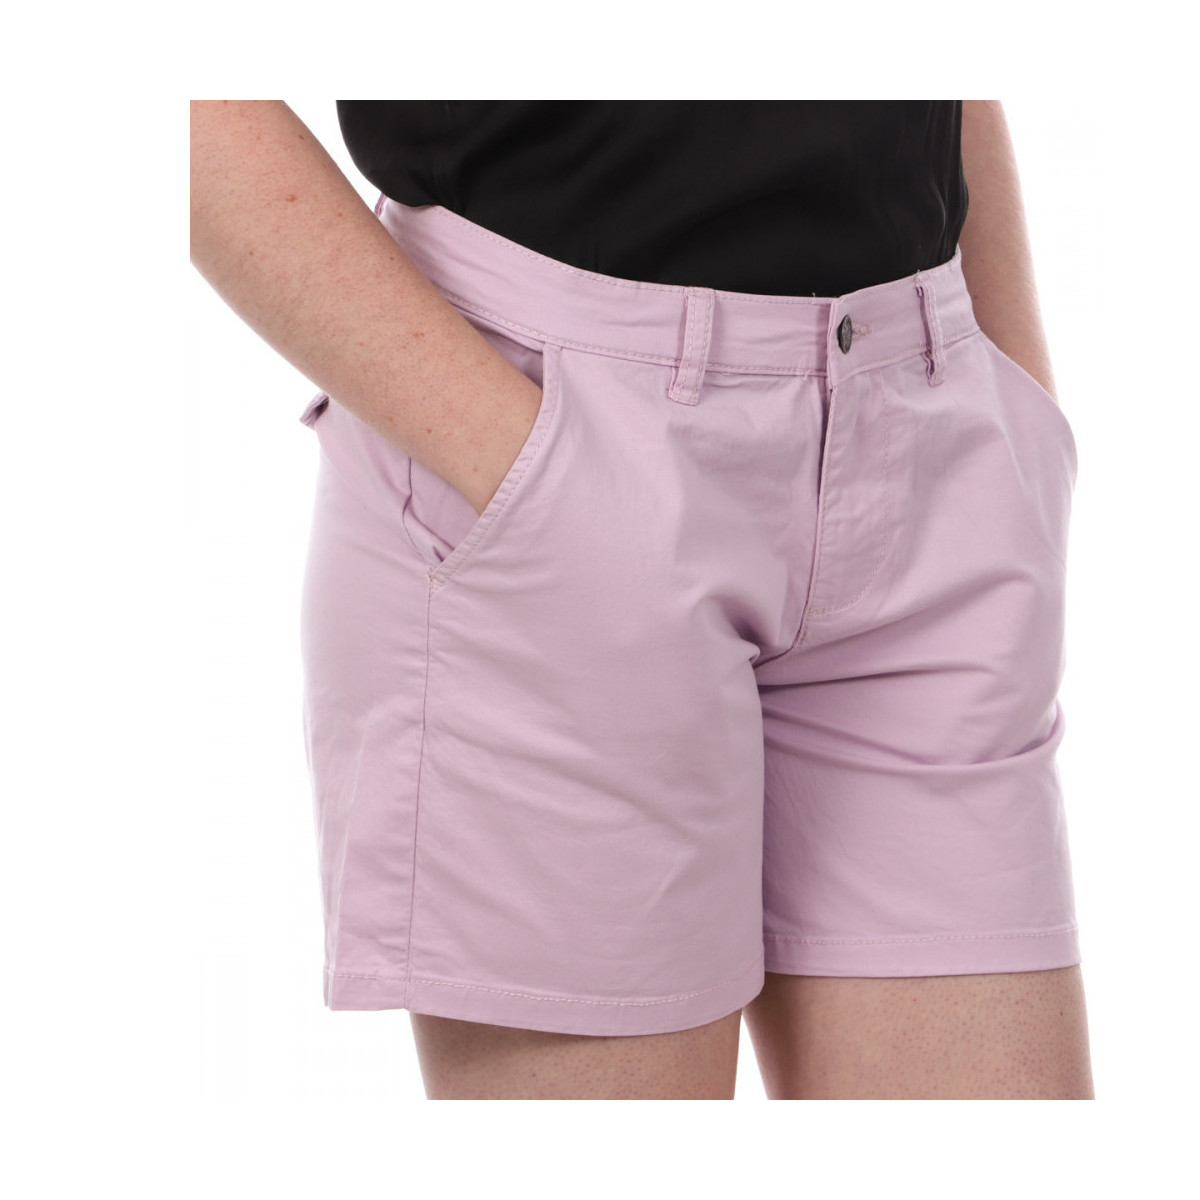 Kleidung Damen Shorts / Bermudas Lee Cooper LEE-008101 Violett